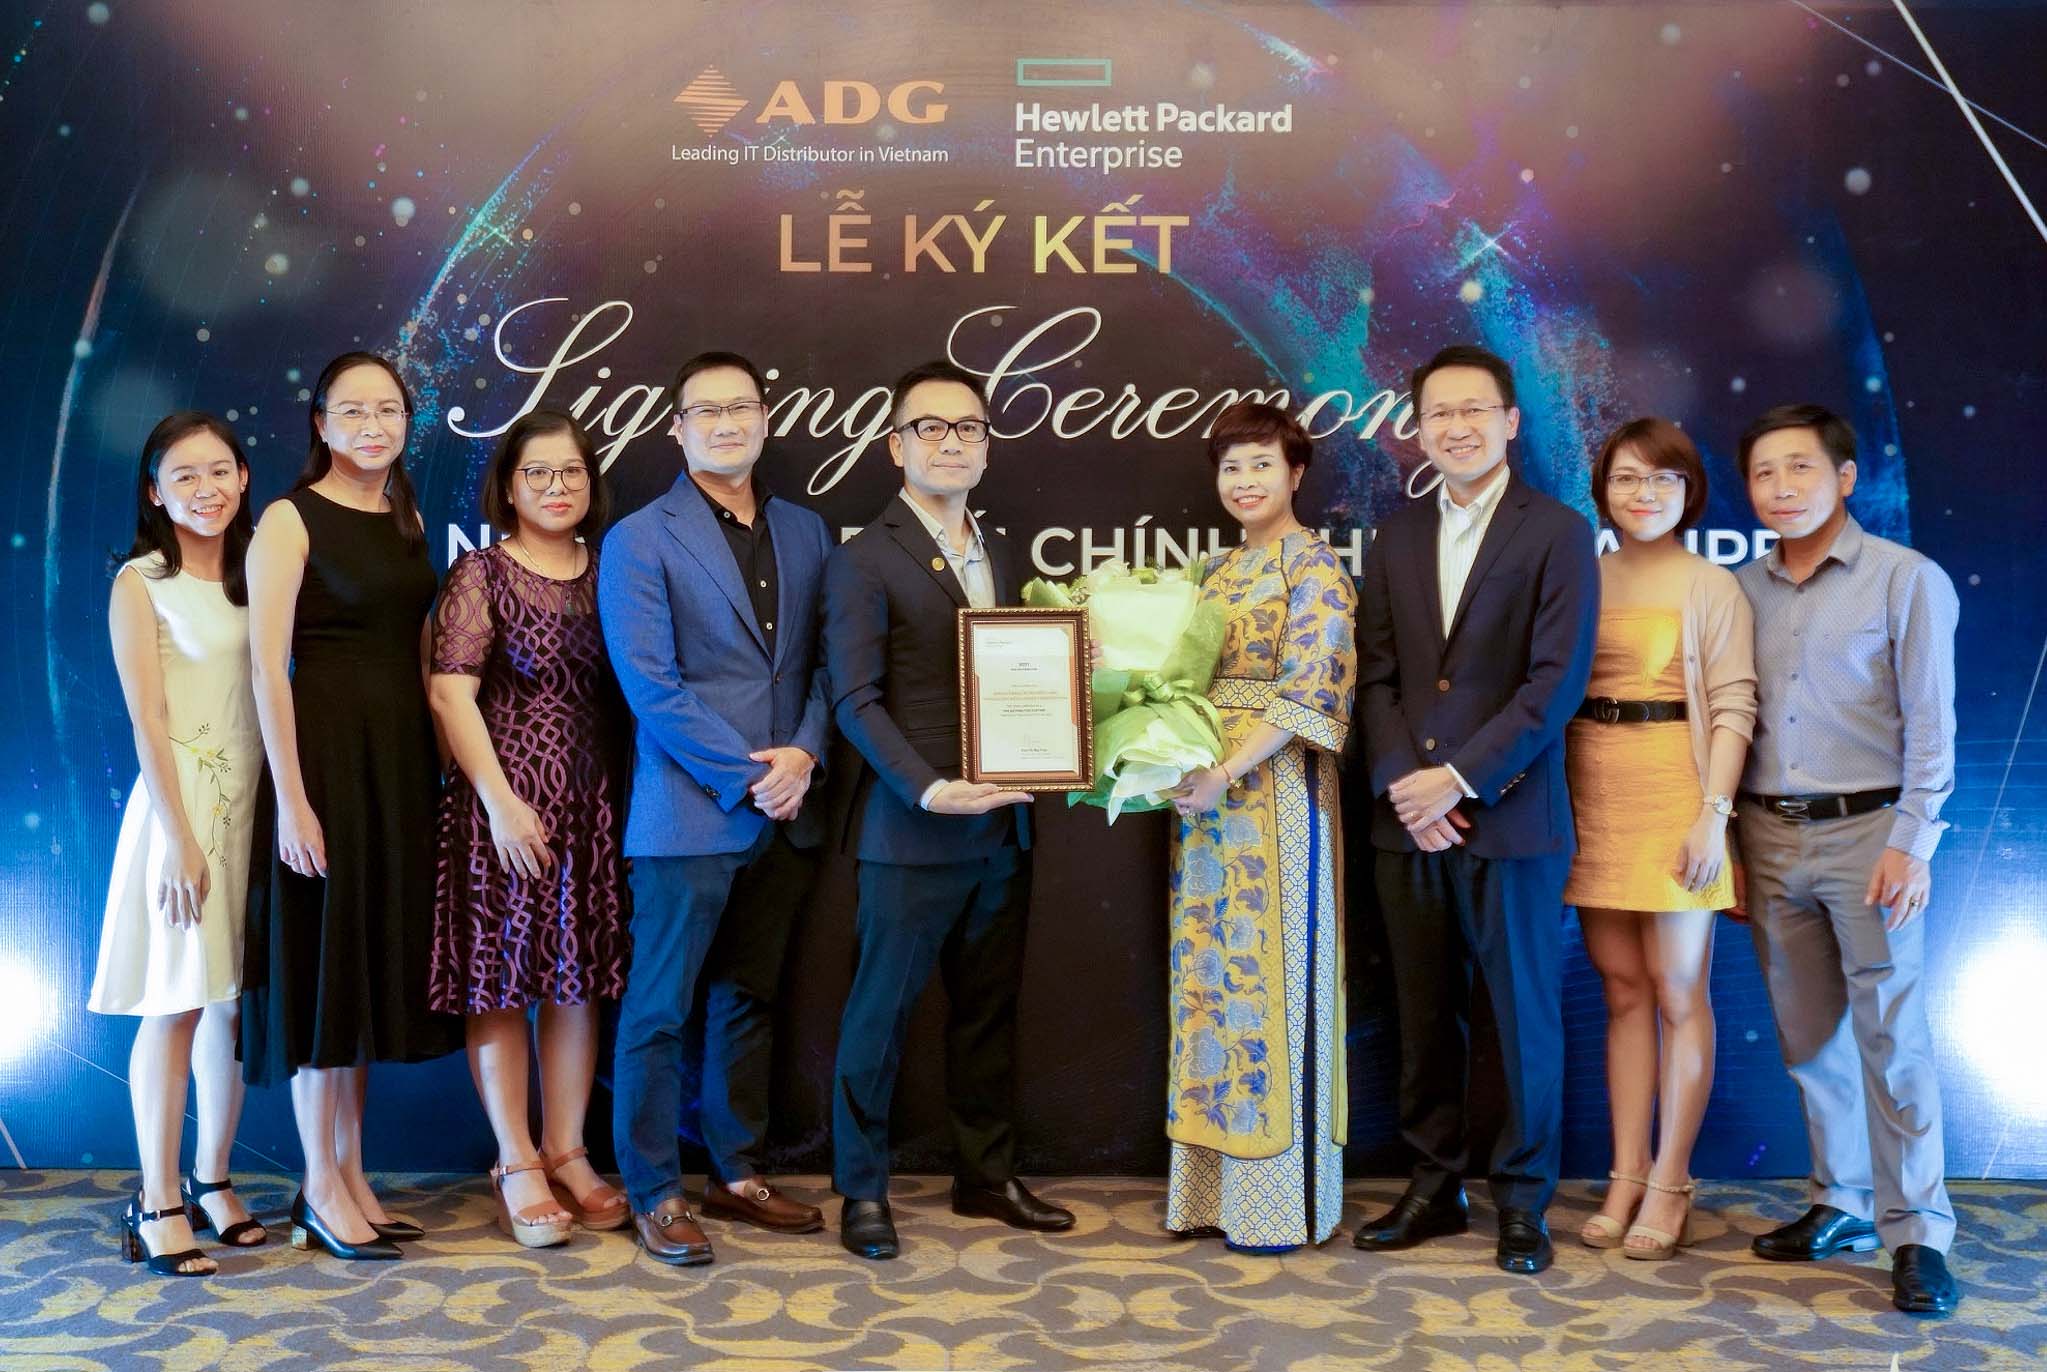 ADG Distribution trở thành Nhà phân phối mới nhất của HPE tại Việt Nam